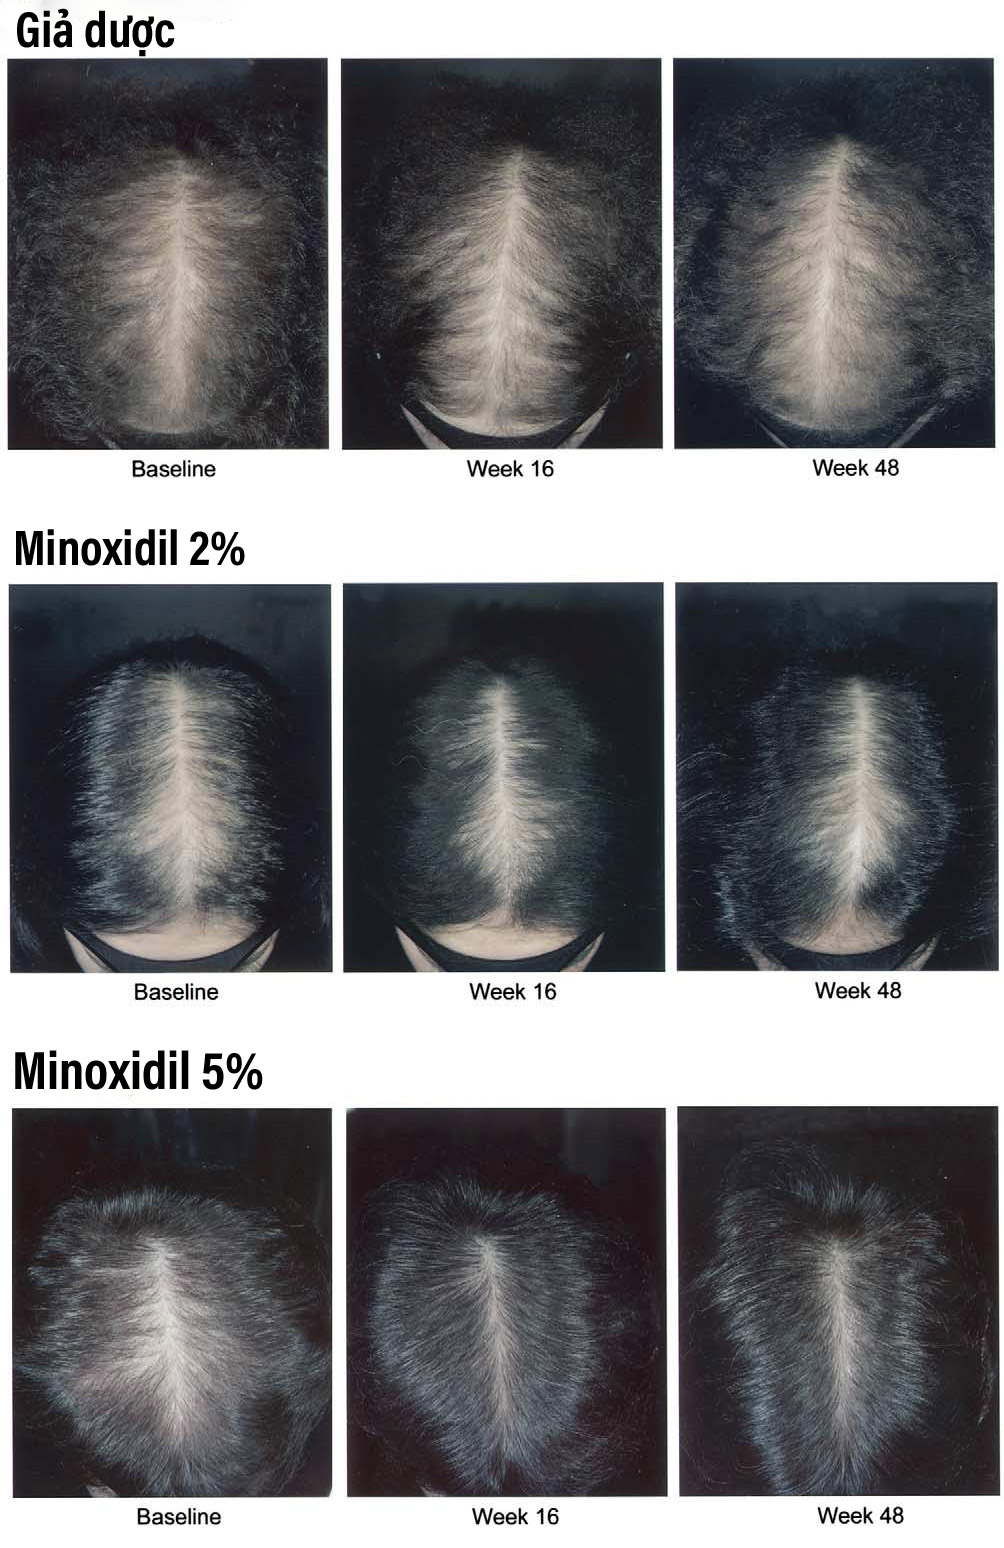 Tác dụng của minoxidil 2% và 5% so với giả dược.